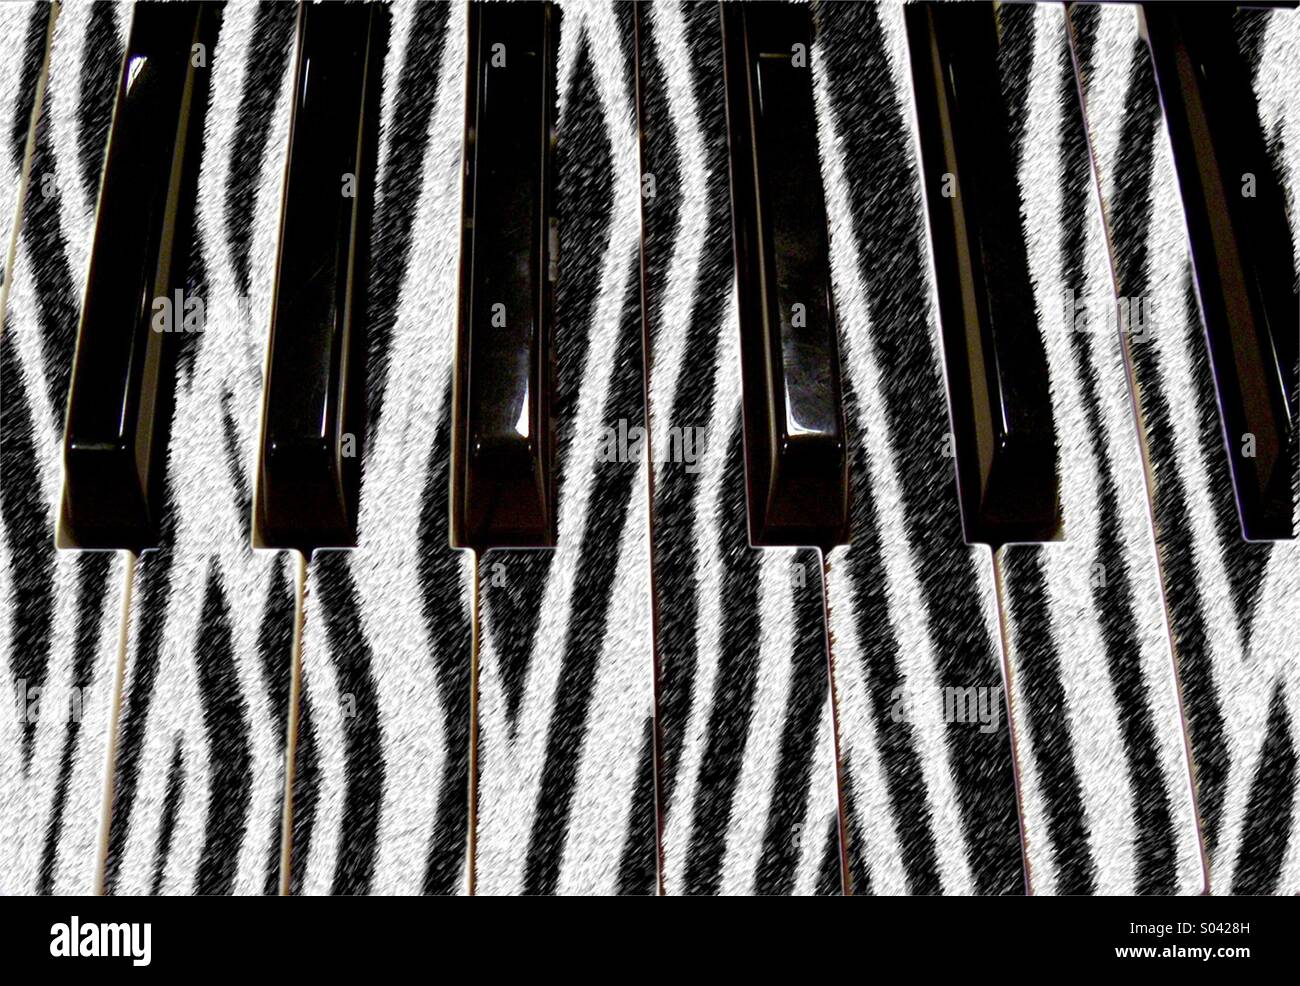 The zebra piano keys Stock Photo - Alamy